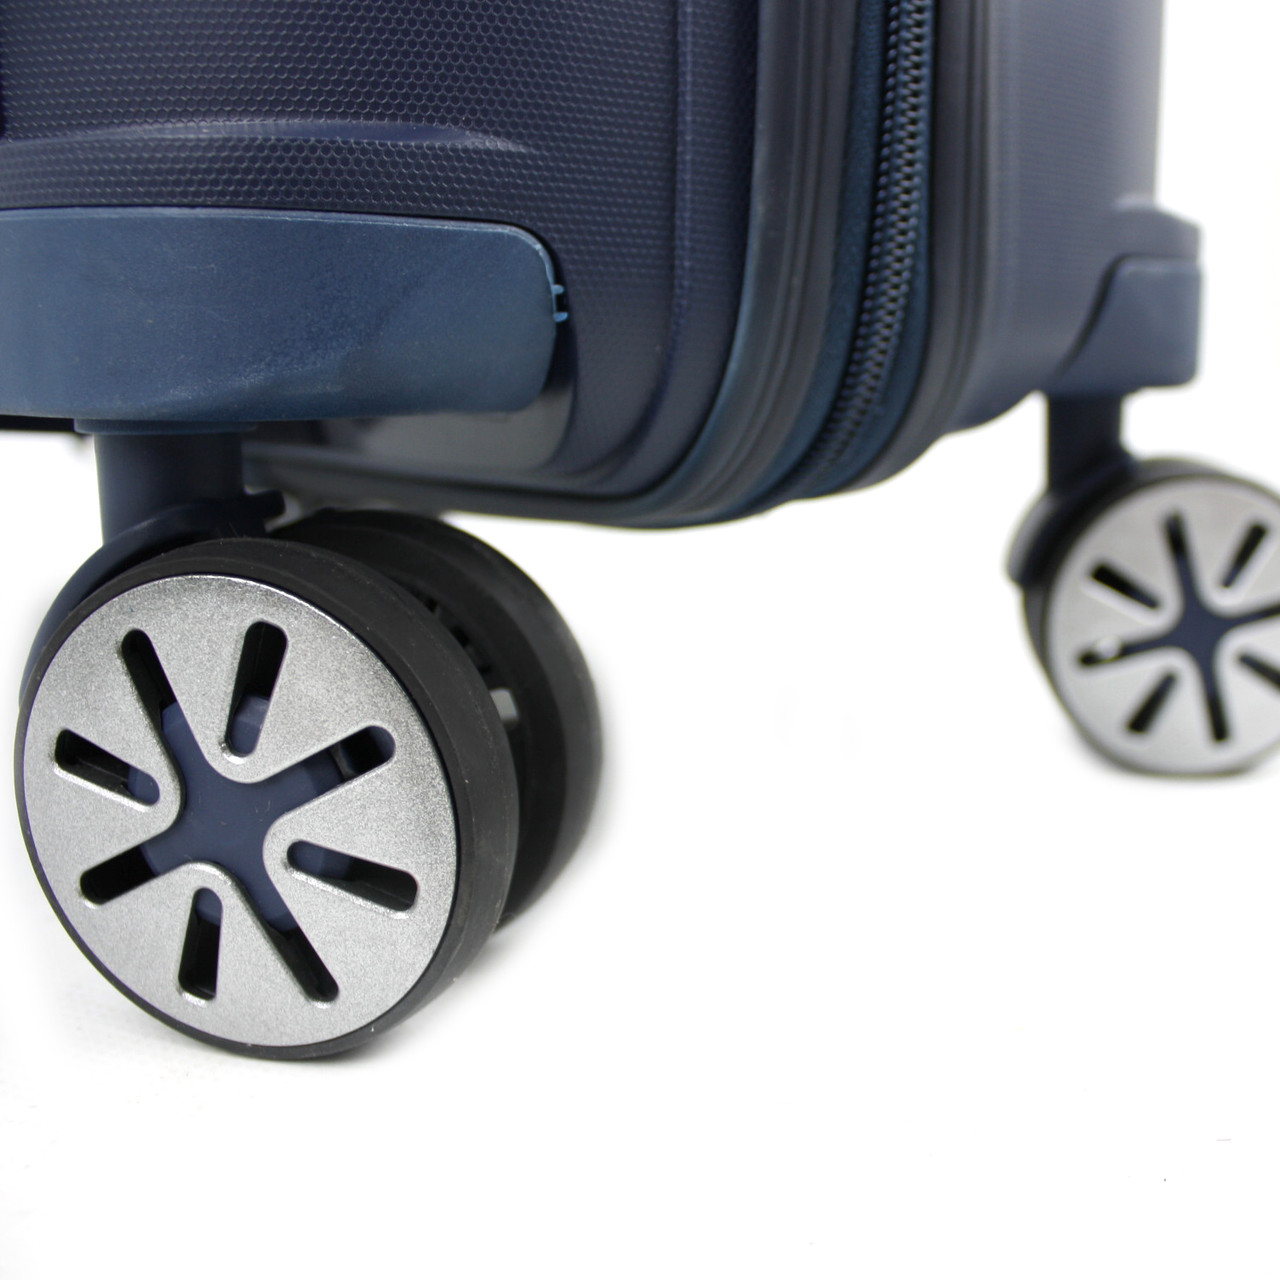 Маленький чемодан для ручьной клади из полипропилена MCS V305 S RED! Для 8-10 кг! - 2